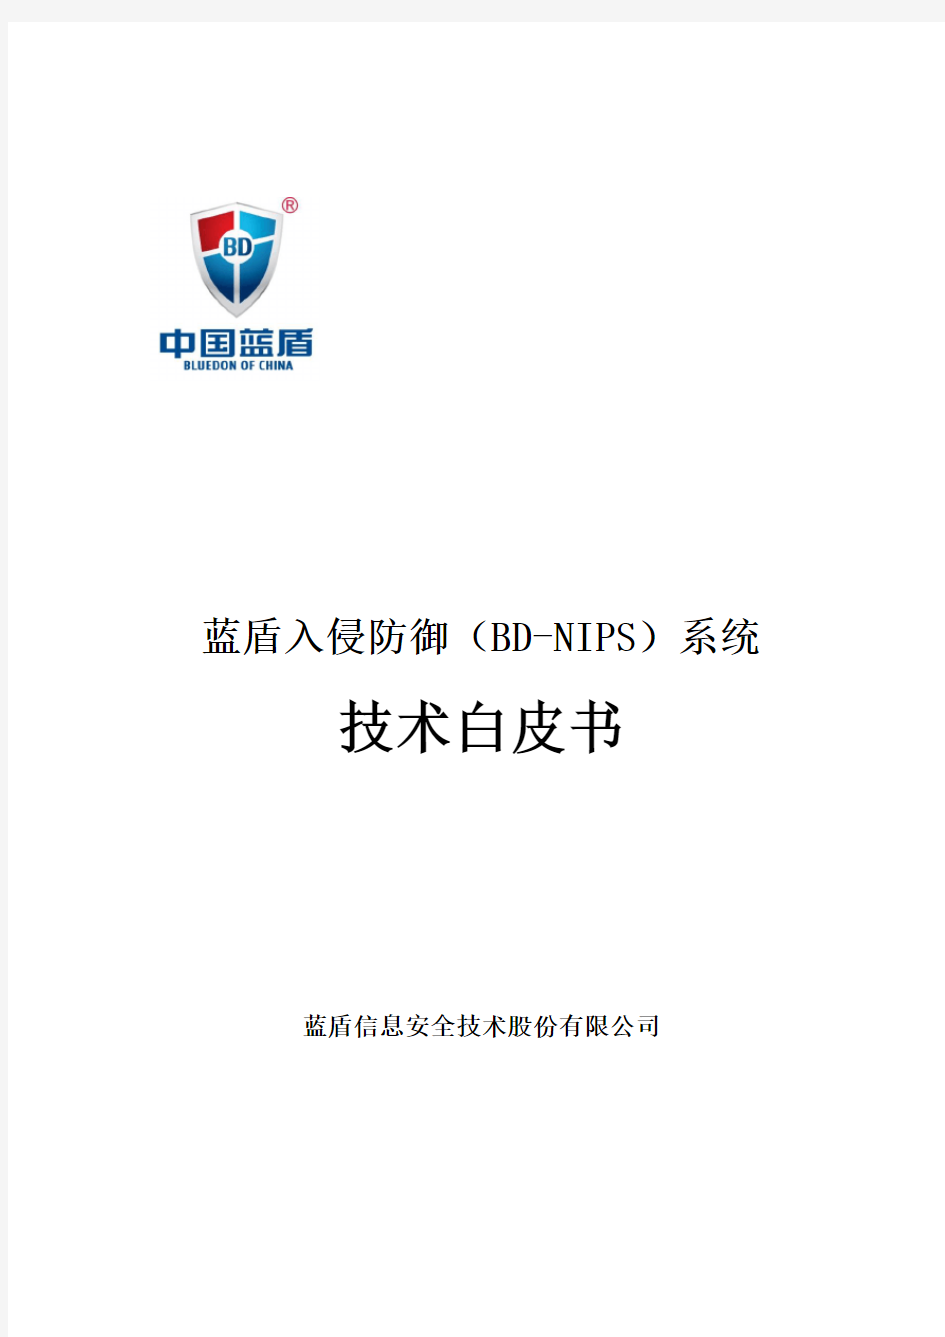 蓝盾入侵防御系统(BD-NIPS)技术白皮书